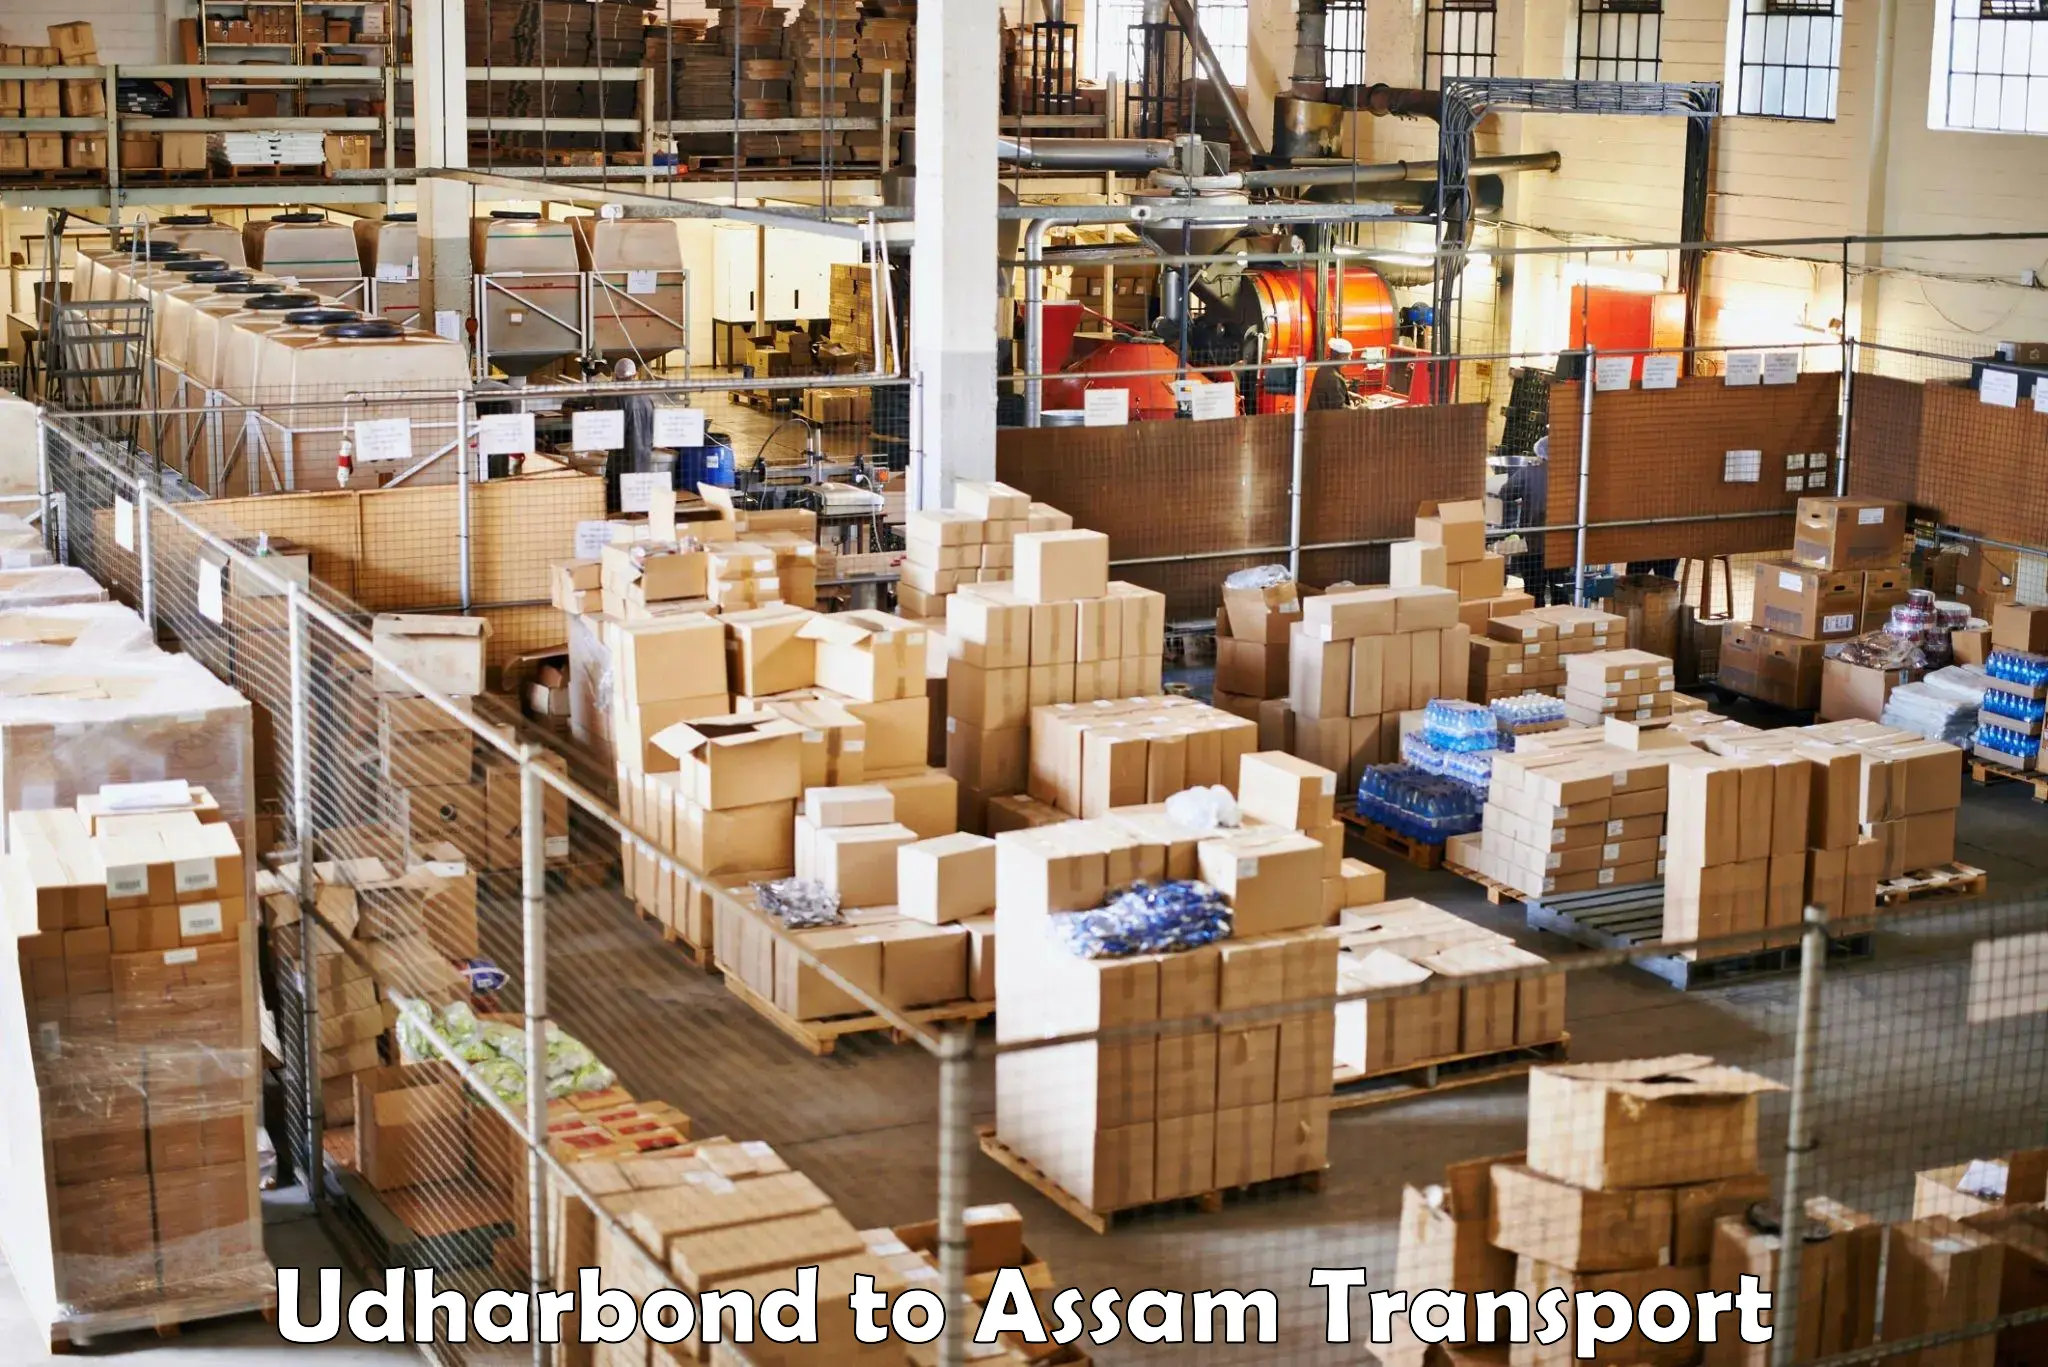 Online transport service Udharbond to Lala Assam